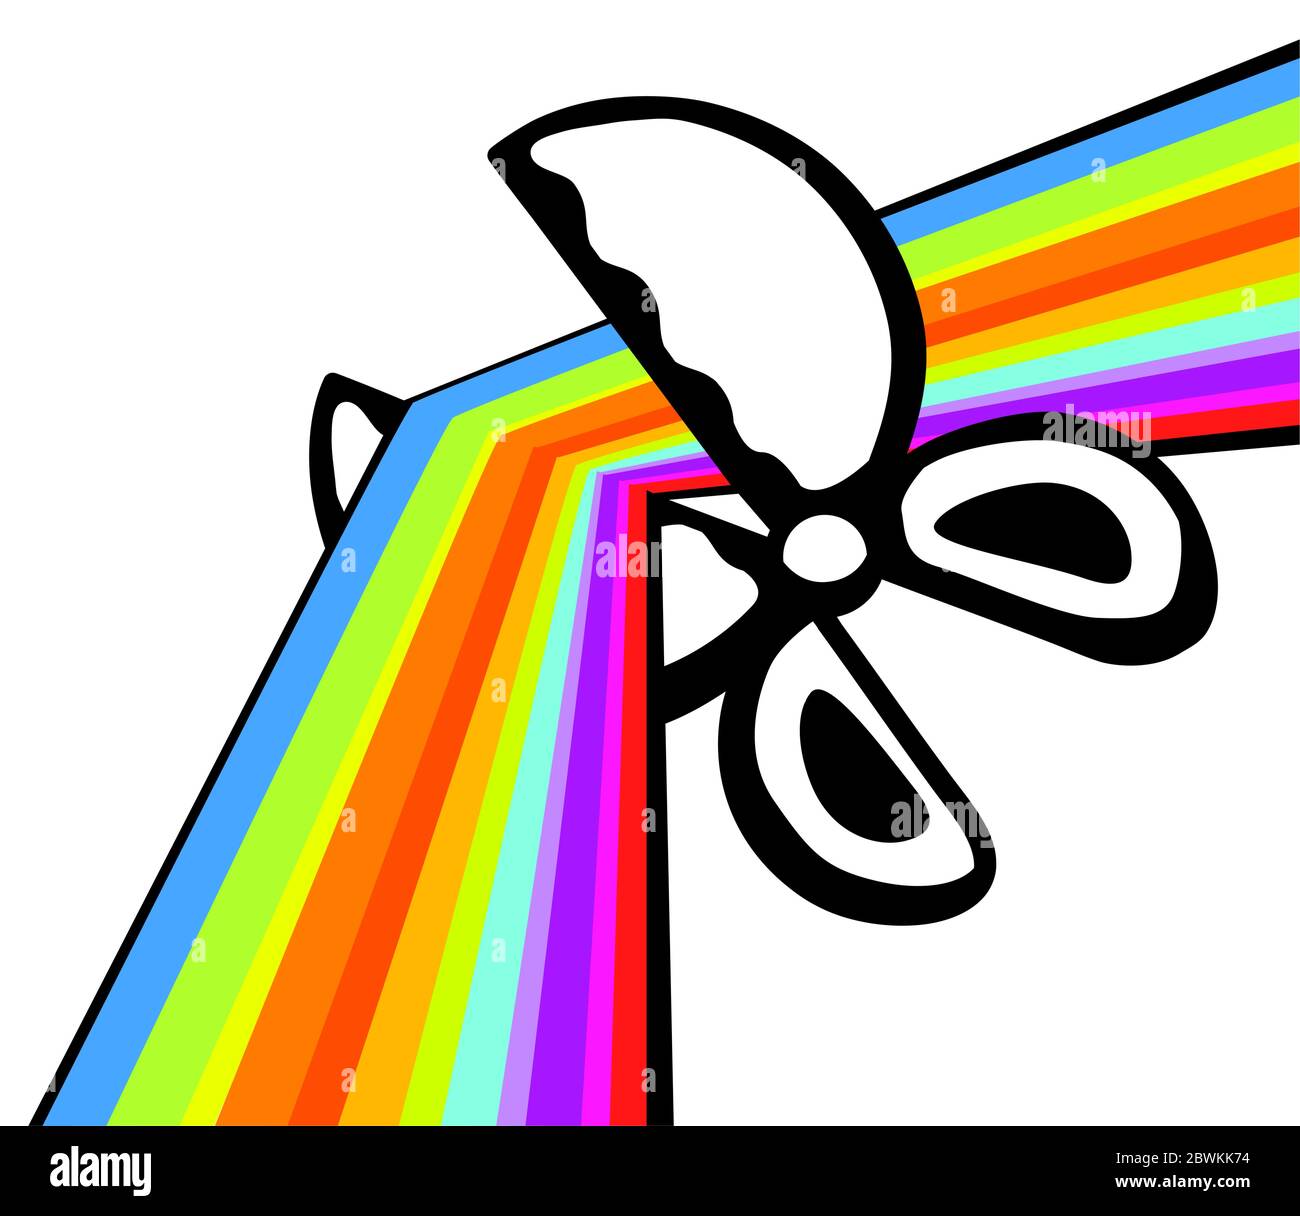 Runde Schere schneiden Farben Regenbogen Linie Cartoon, Vektor-Illustration, horizontal Stock Vektor